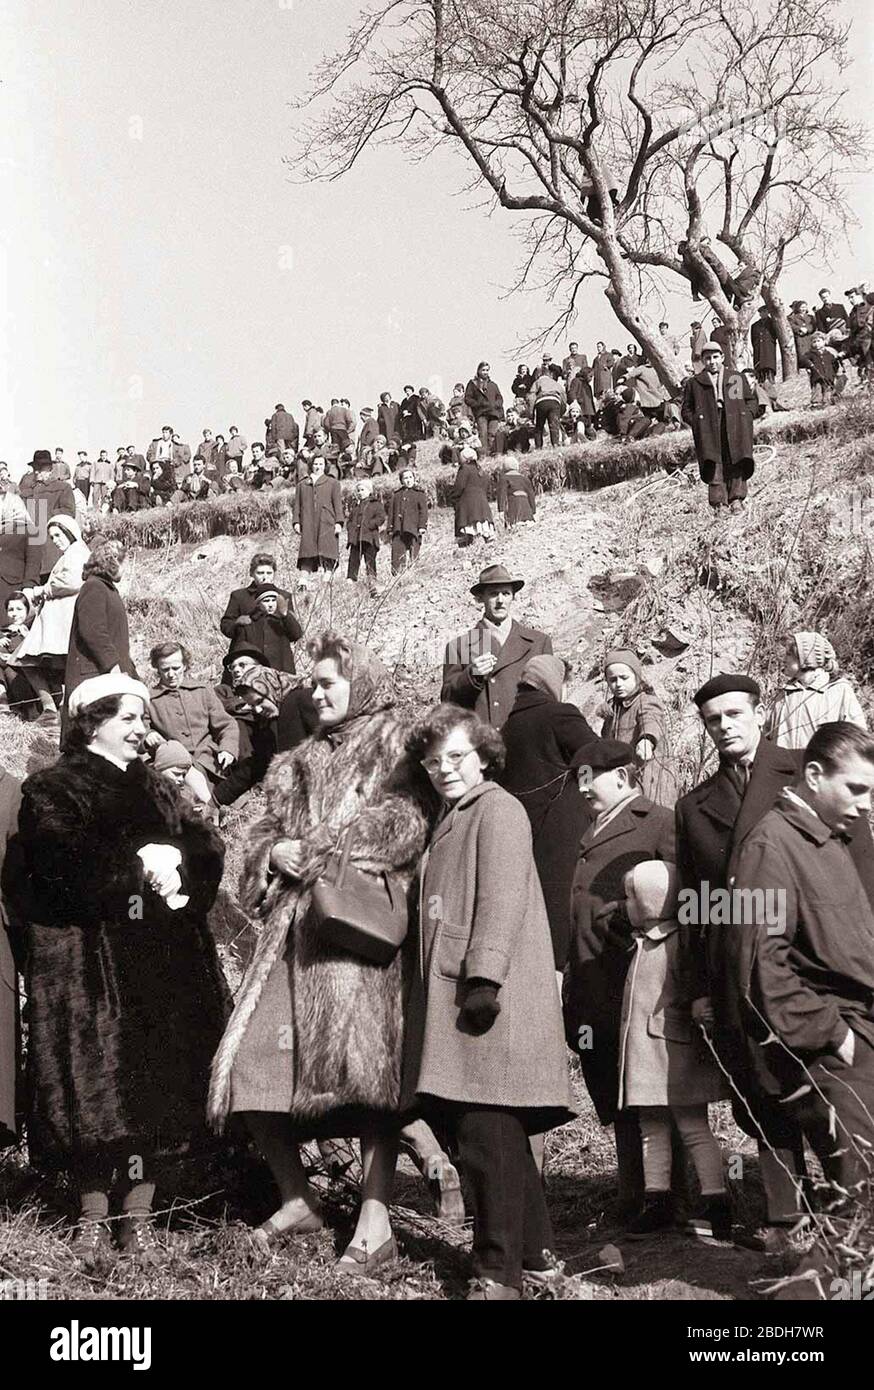 15. februar 1959, Maribor: Turistično olepševalno društvo Maribor je priredilo danes v nedeljo , ob dveh popoldne veliko drsalno revijo pri Treh ribnikih. Program je obsegal 12 točk posameznih drsalcev in en skupinski nastop. Na drsalni reviji so nastopili najboljši drsalci - lanskoletni državni prvaki v drsanju. Organizator je med drugim poskrbel, da so gledalci med nastopom lahko dobili topel čaj in žgane pijače, da ne bi koga le preveč zeblo, kljub zanimivemu programu, ki se je odvijal. Stock Photo